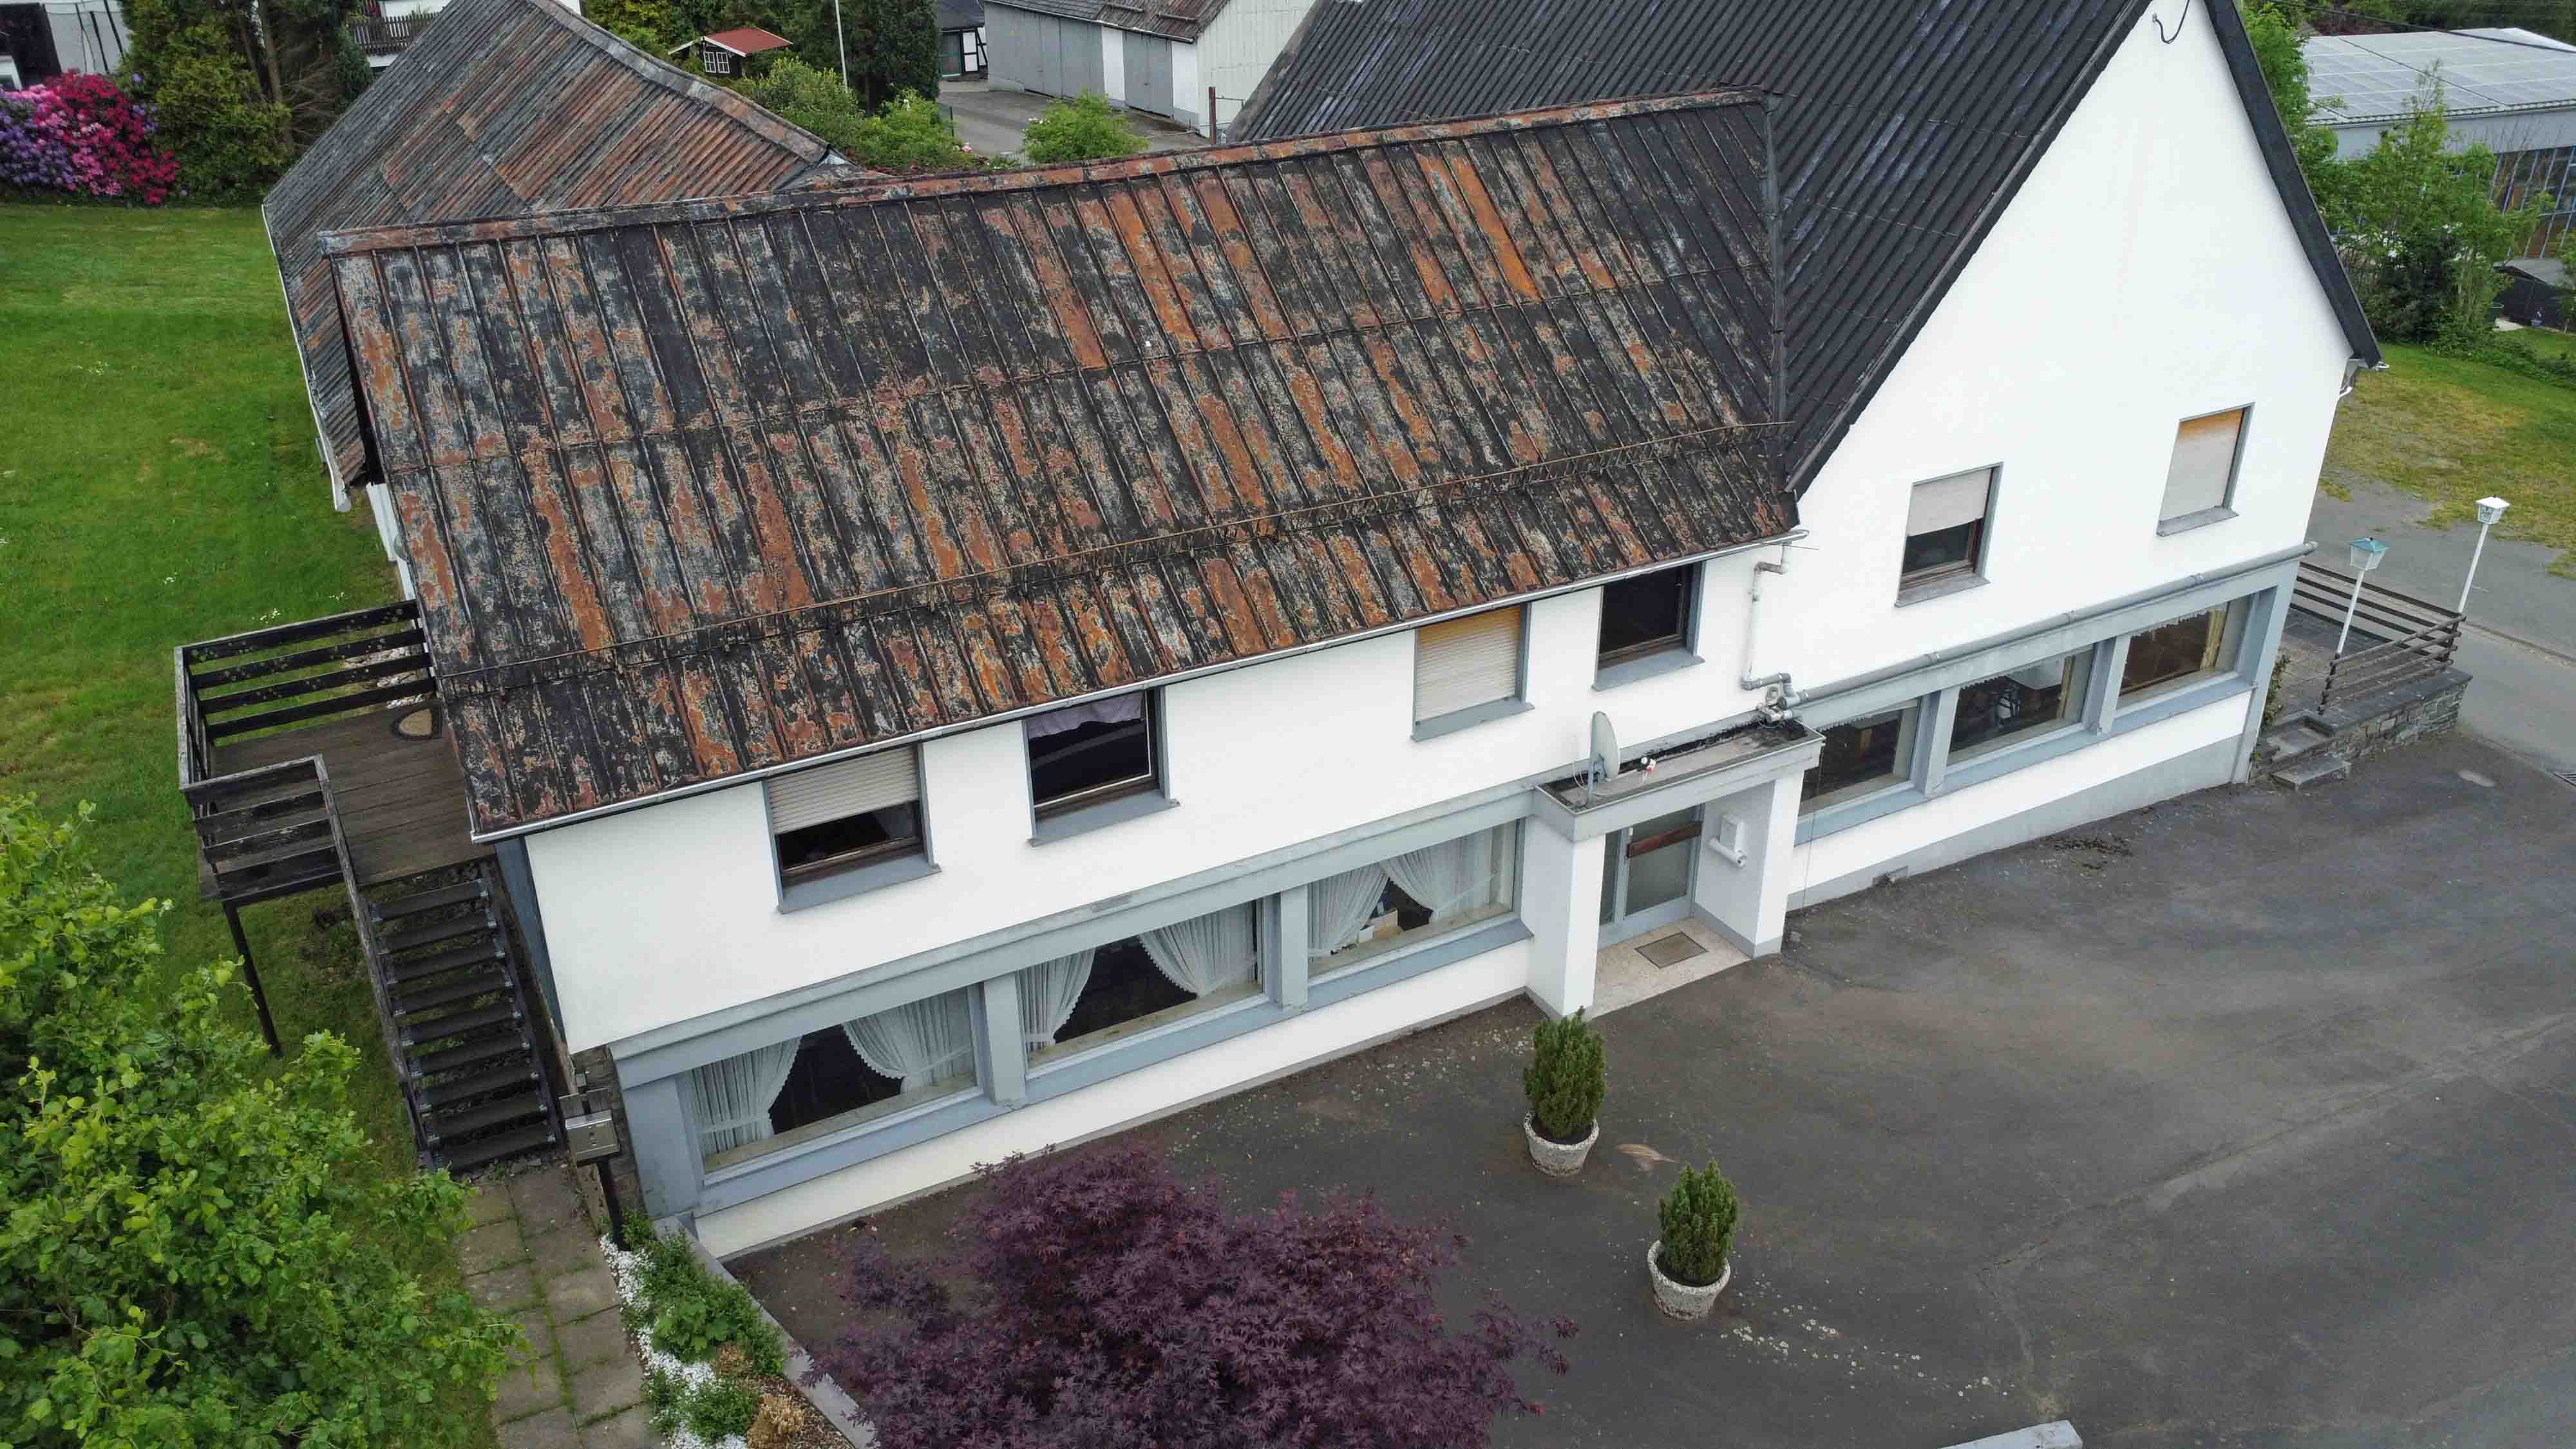 Reichshof-Hahn: Viel Platz für wenig Geld - 157 m² Wohn-, 182 m² Nutzfläche auf 3.655 m² Grundstück, unten Gaststätte (182 m²), oben Wohnen (157 m²)